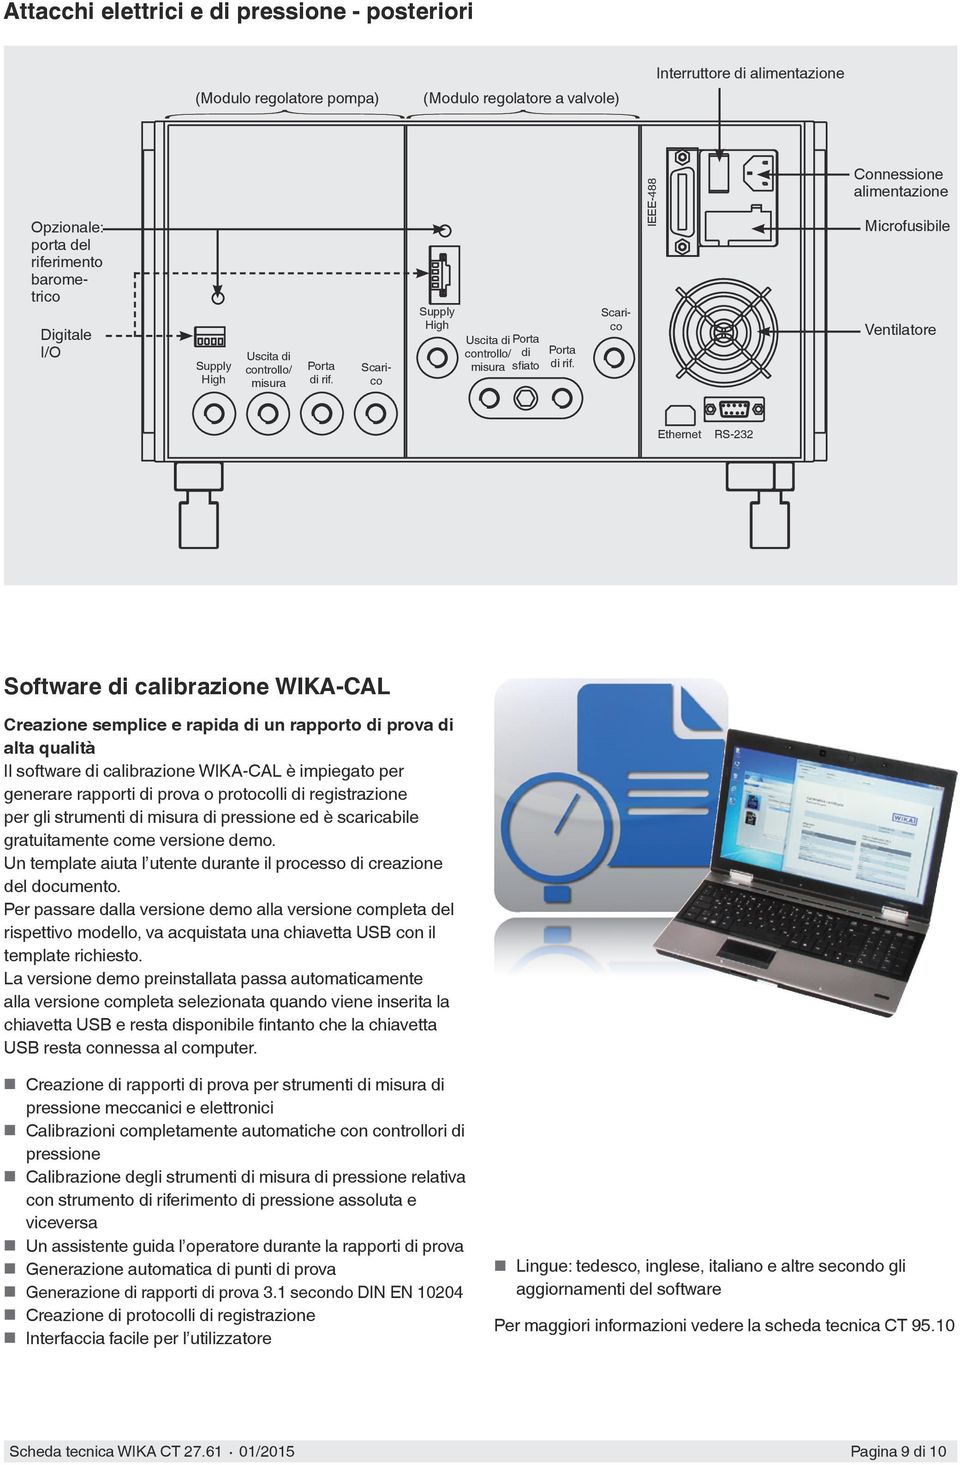 IEEE-488 Connessione alimentazione Microfusibile Ventilatore Ethernet RS-232 Software di calibrazione WIKA-CAL Creazione semplice e rapida di un rapporto di prova di alta qualità Il software di